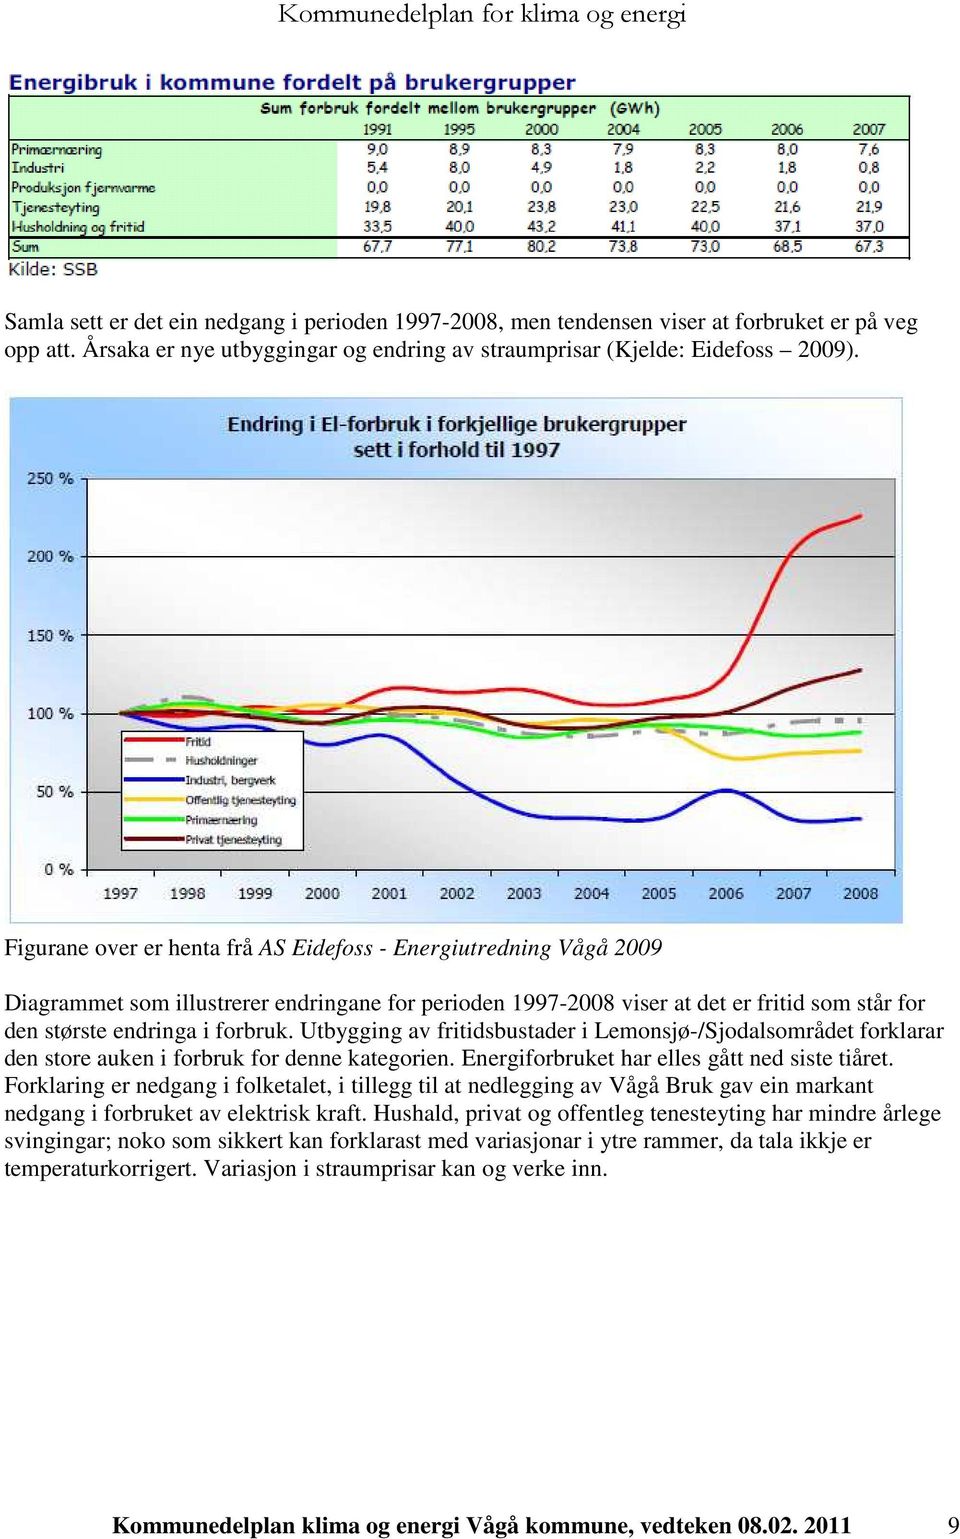 Utbygging av fritidsbustader i Lemonsjø-/Sjodalsområdet forklarar den store auken i forbruk for denne kategorien. Energiforbruket har elles gått ned siste tiåret.